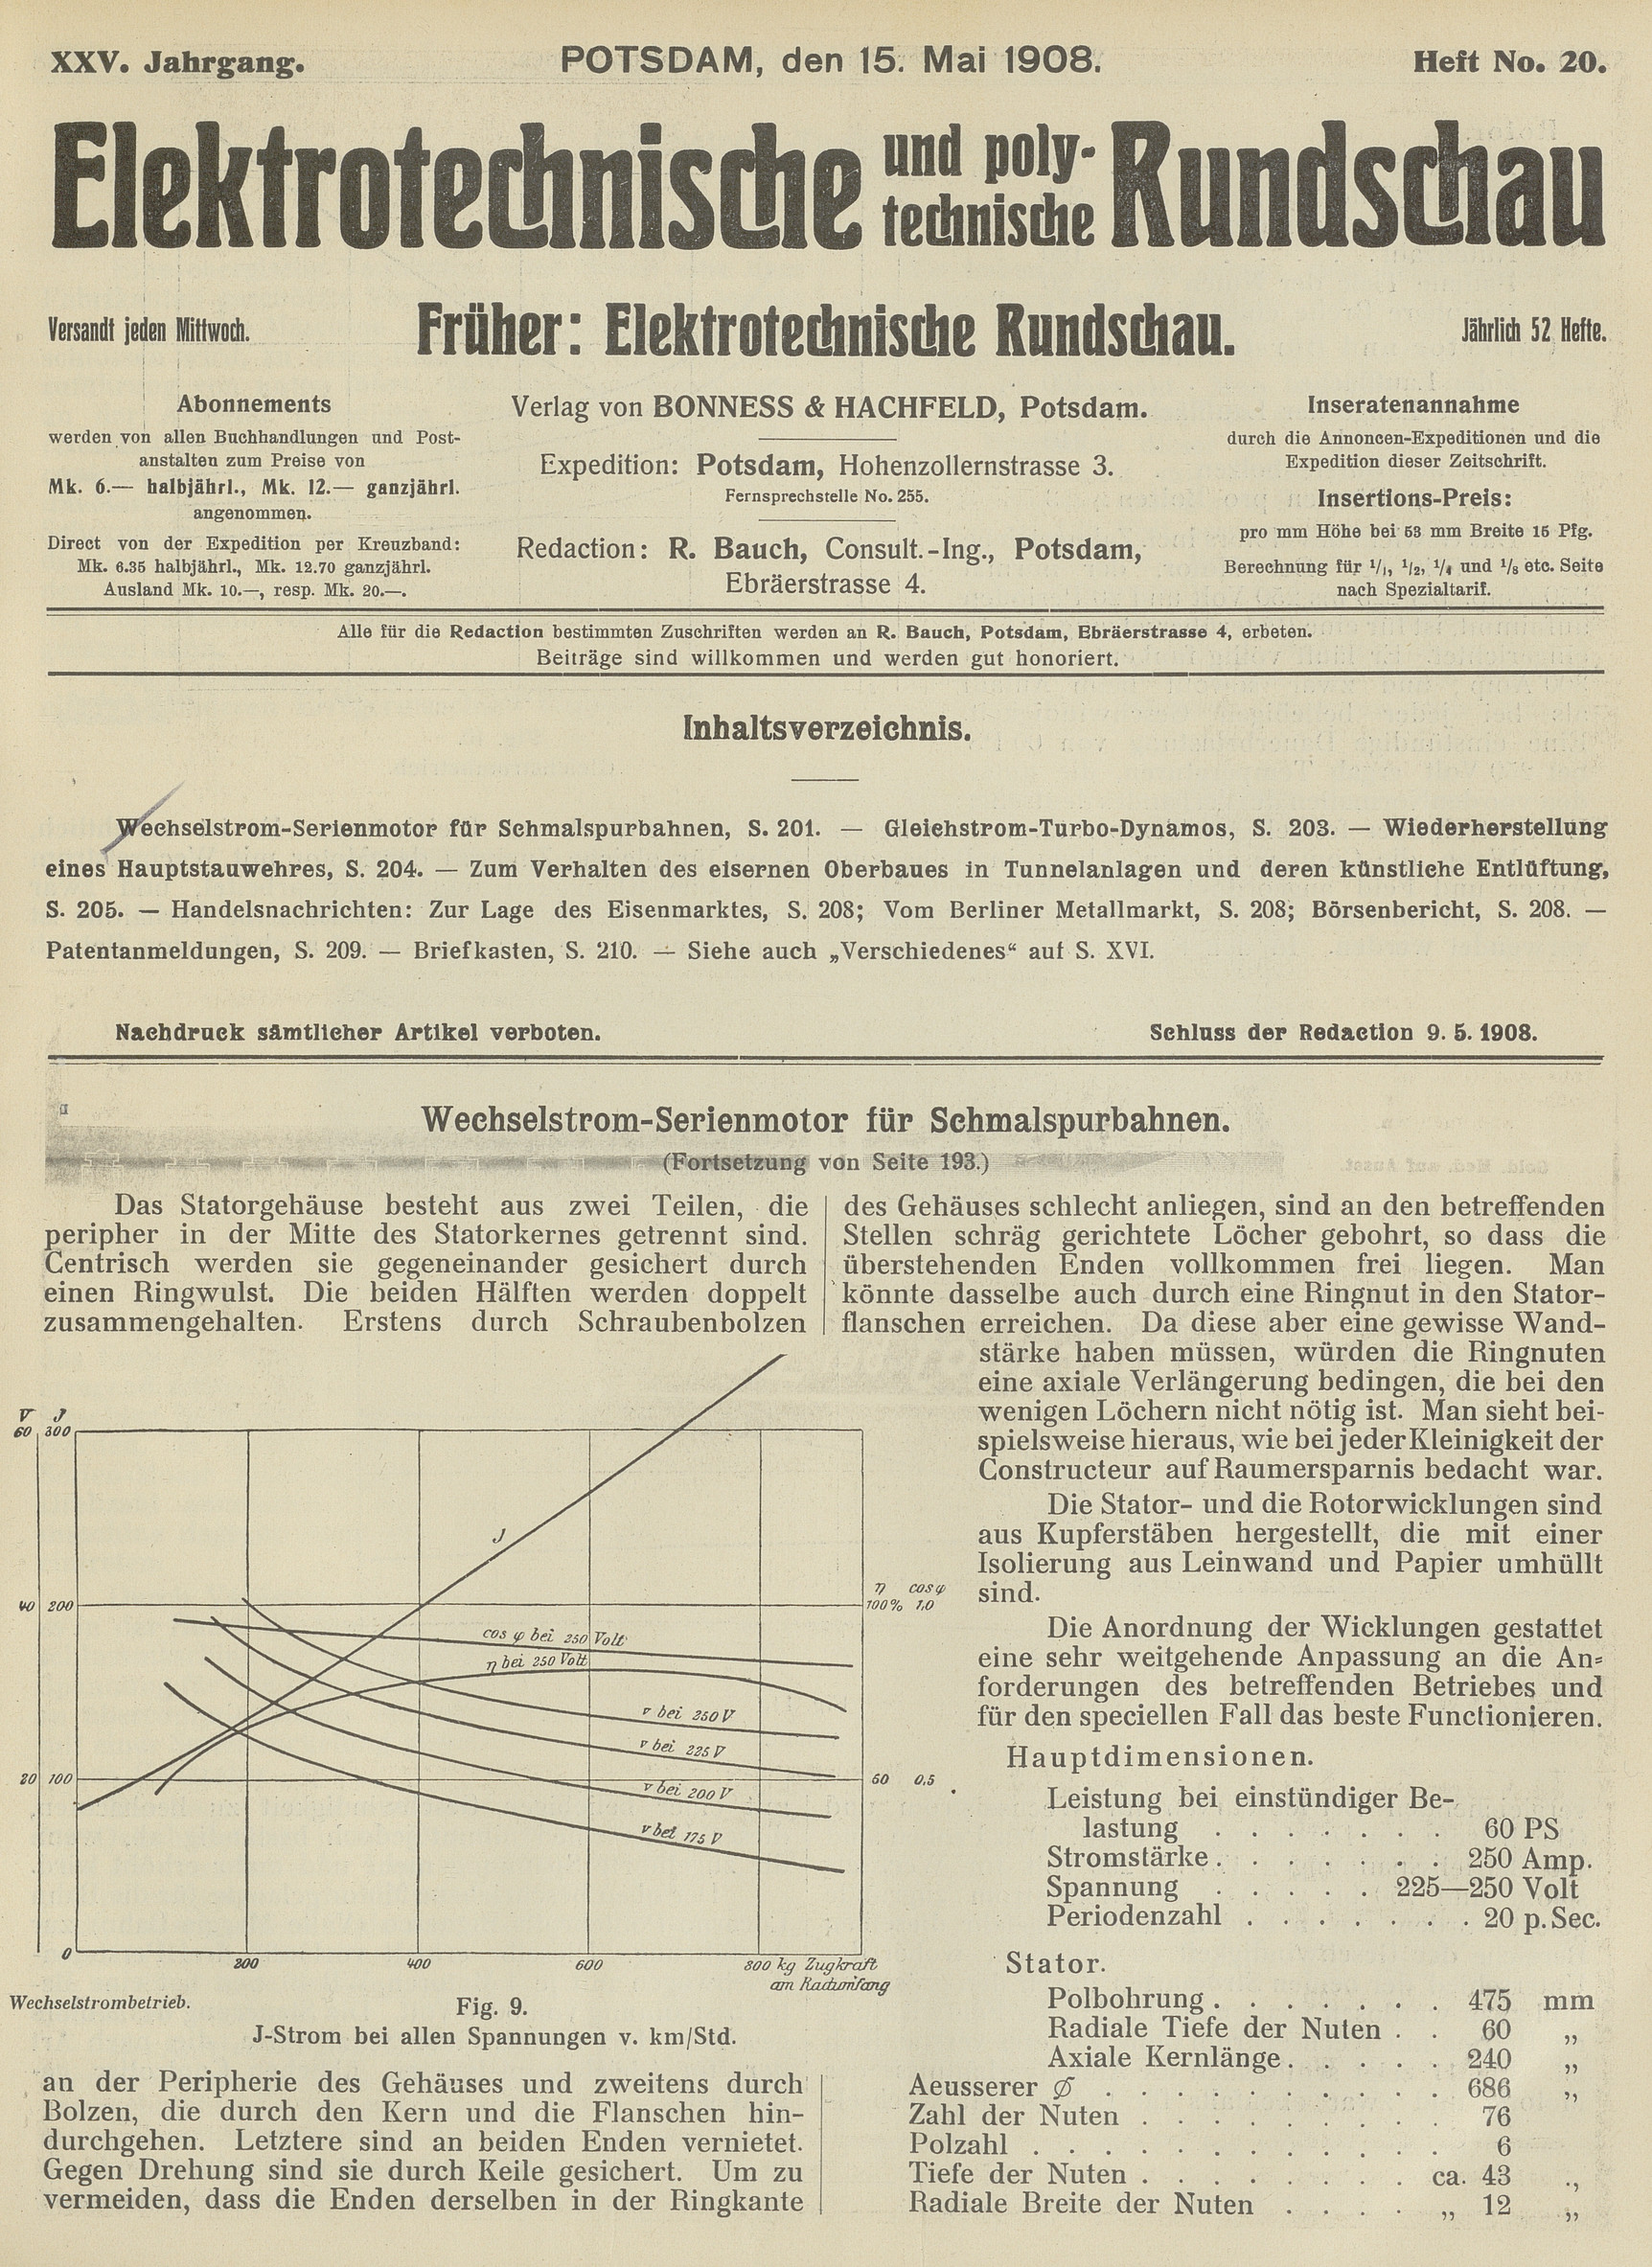 Elektrotechnische und polytechnische Rundschau, XXV. Jahrgang, Heft No. 20